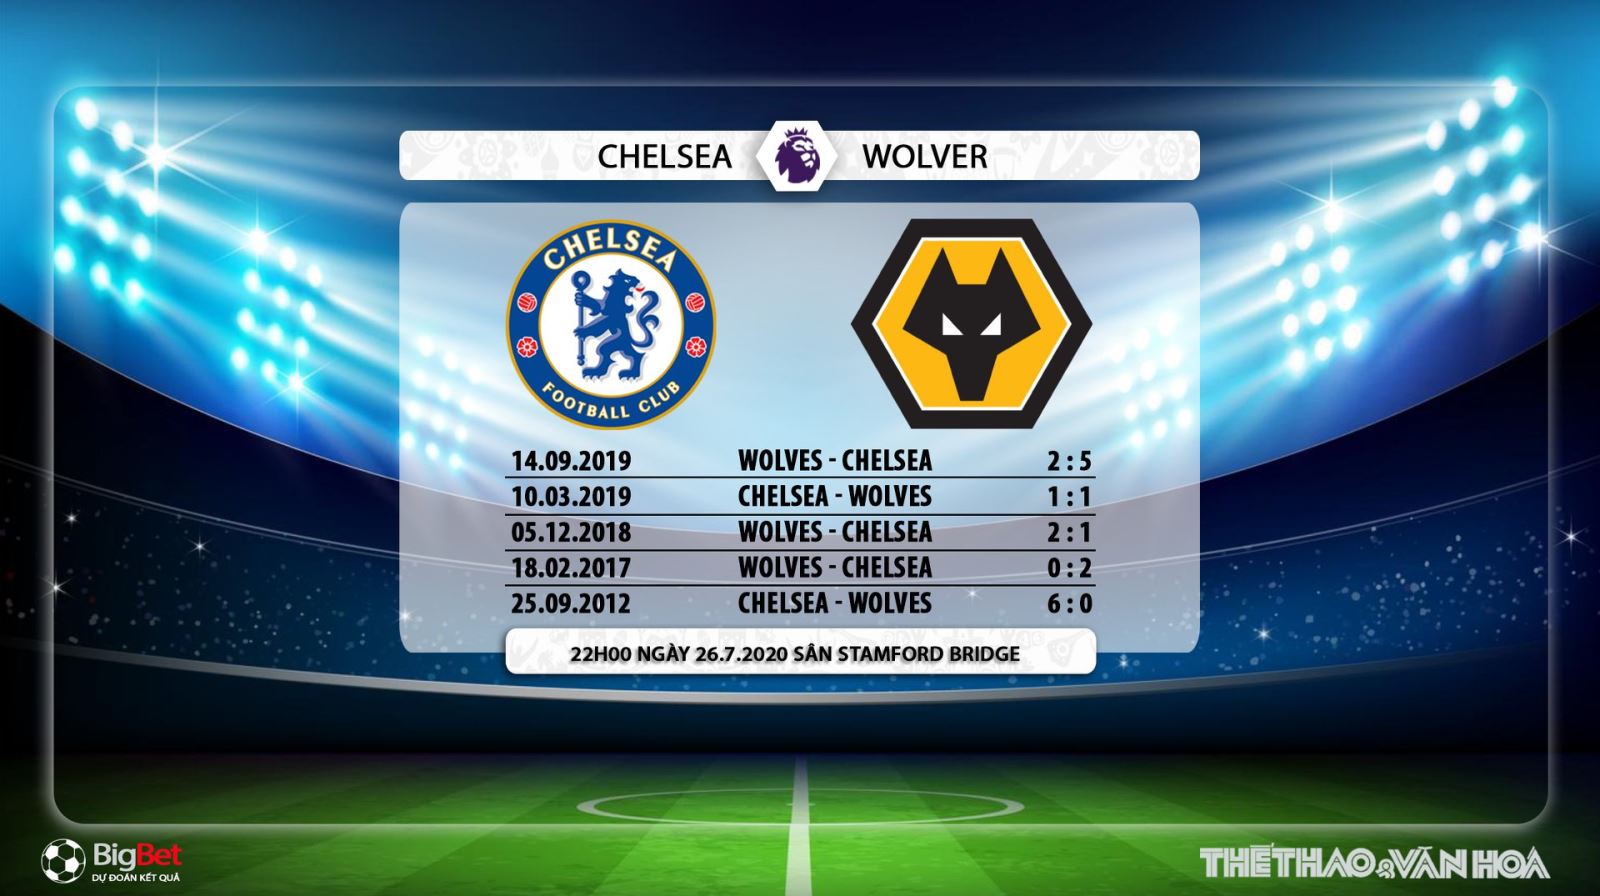 Chelsea vs Wolves, Wolves, Chelsea, nhận định bóng đá bóng đá, kèo Chelsea vs Wolves, nhận định bóng đá bóng đá Chelsea vs Wolves, trực tiếp Chelsea vs Wolves